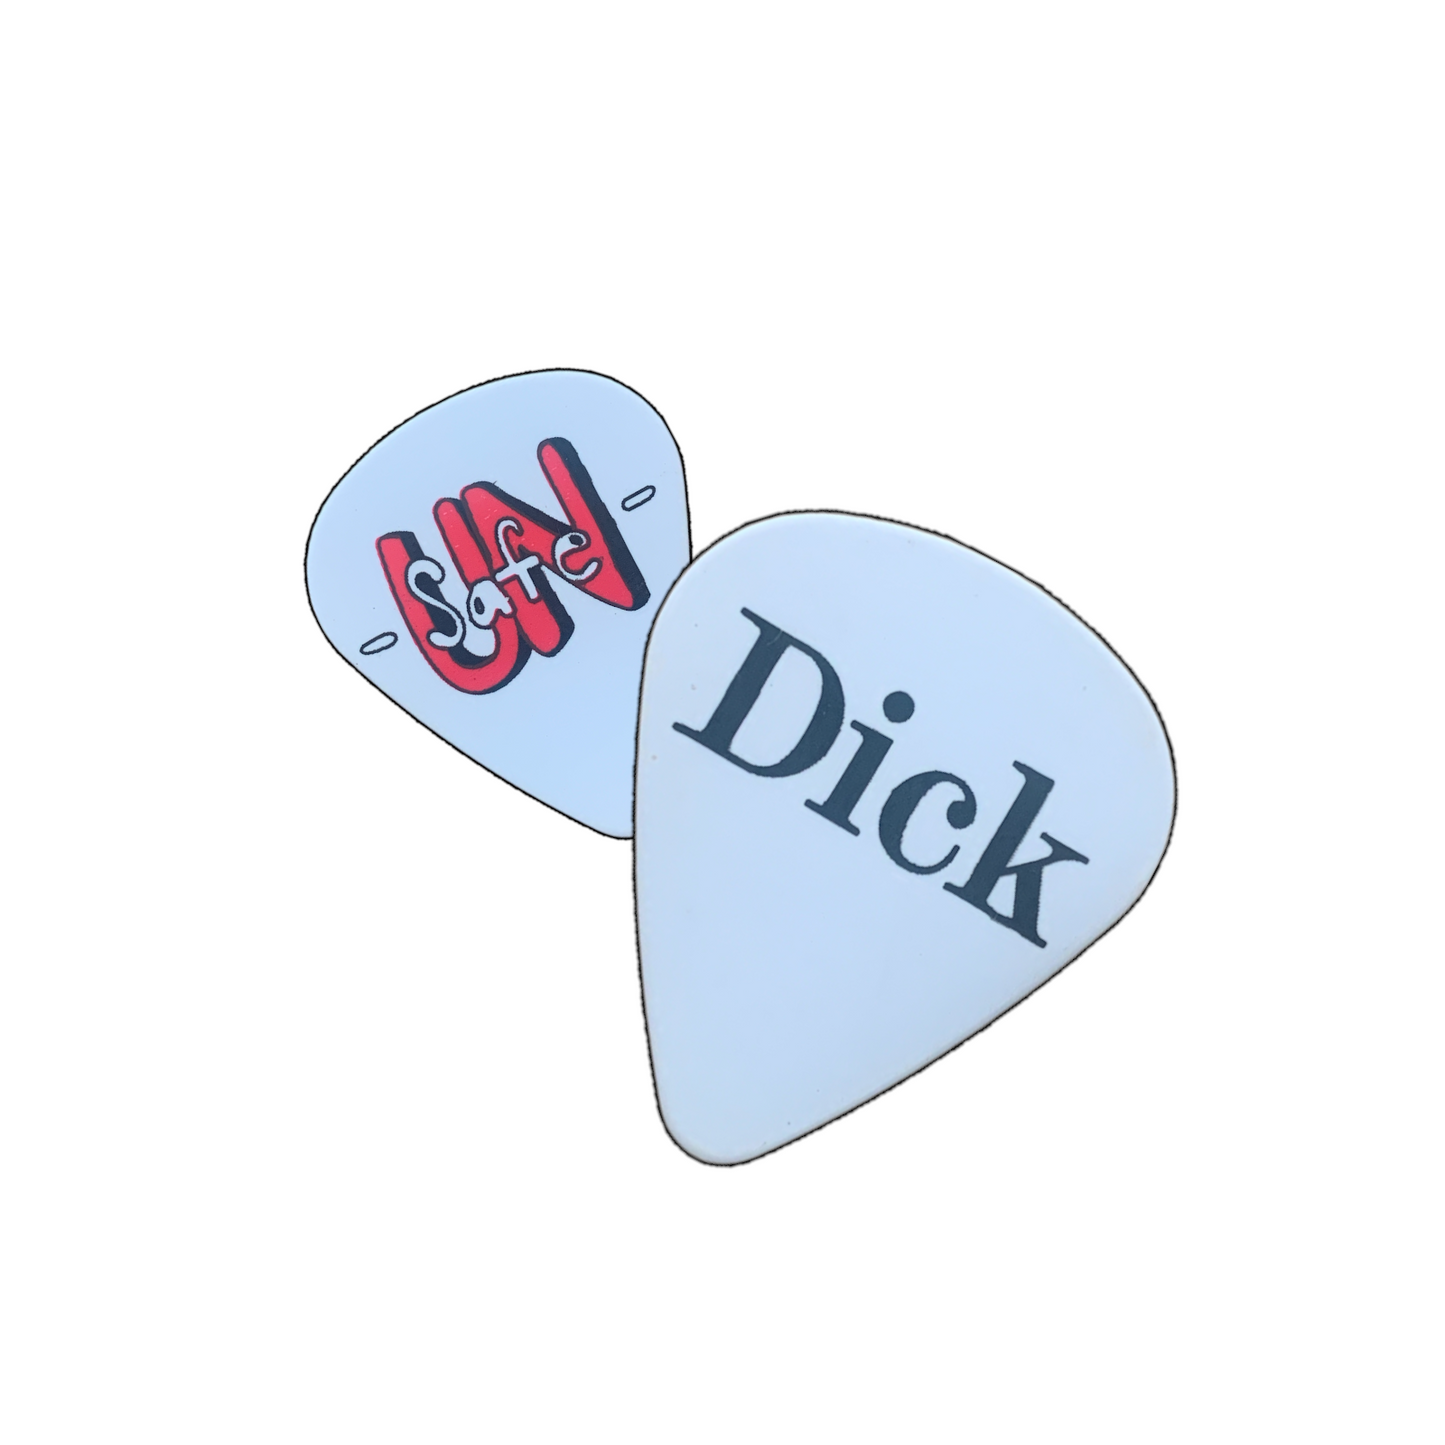 Dick Pics (Guitar picks)